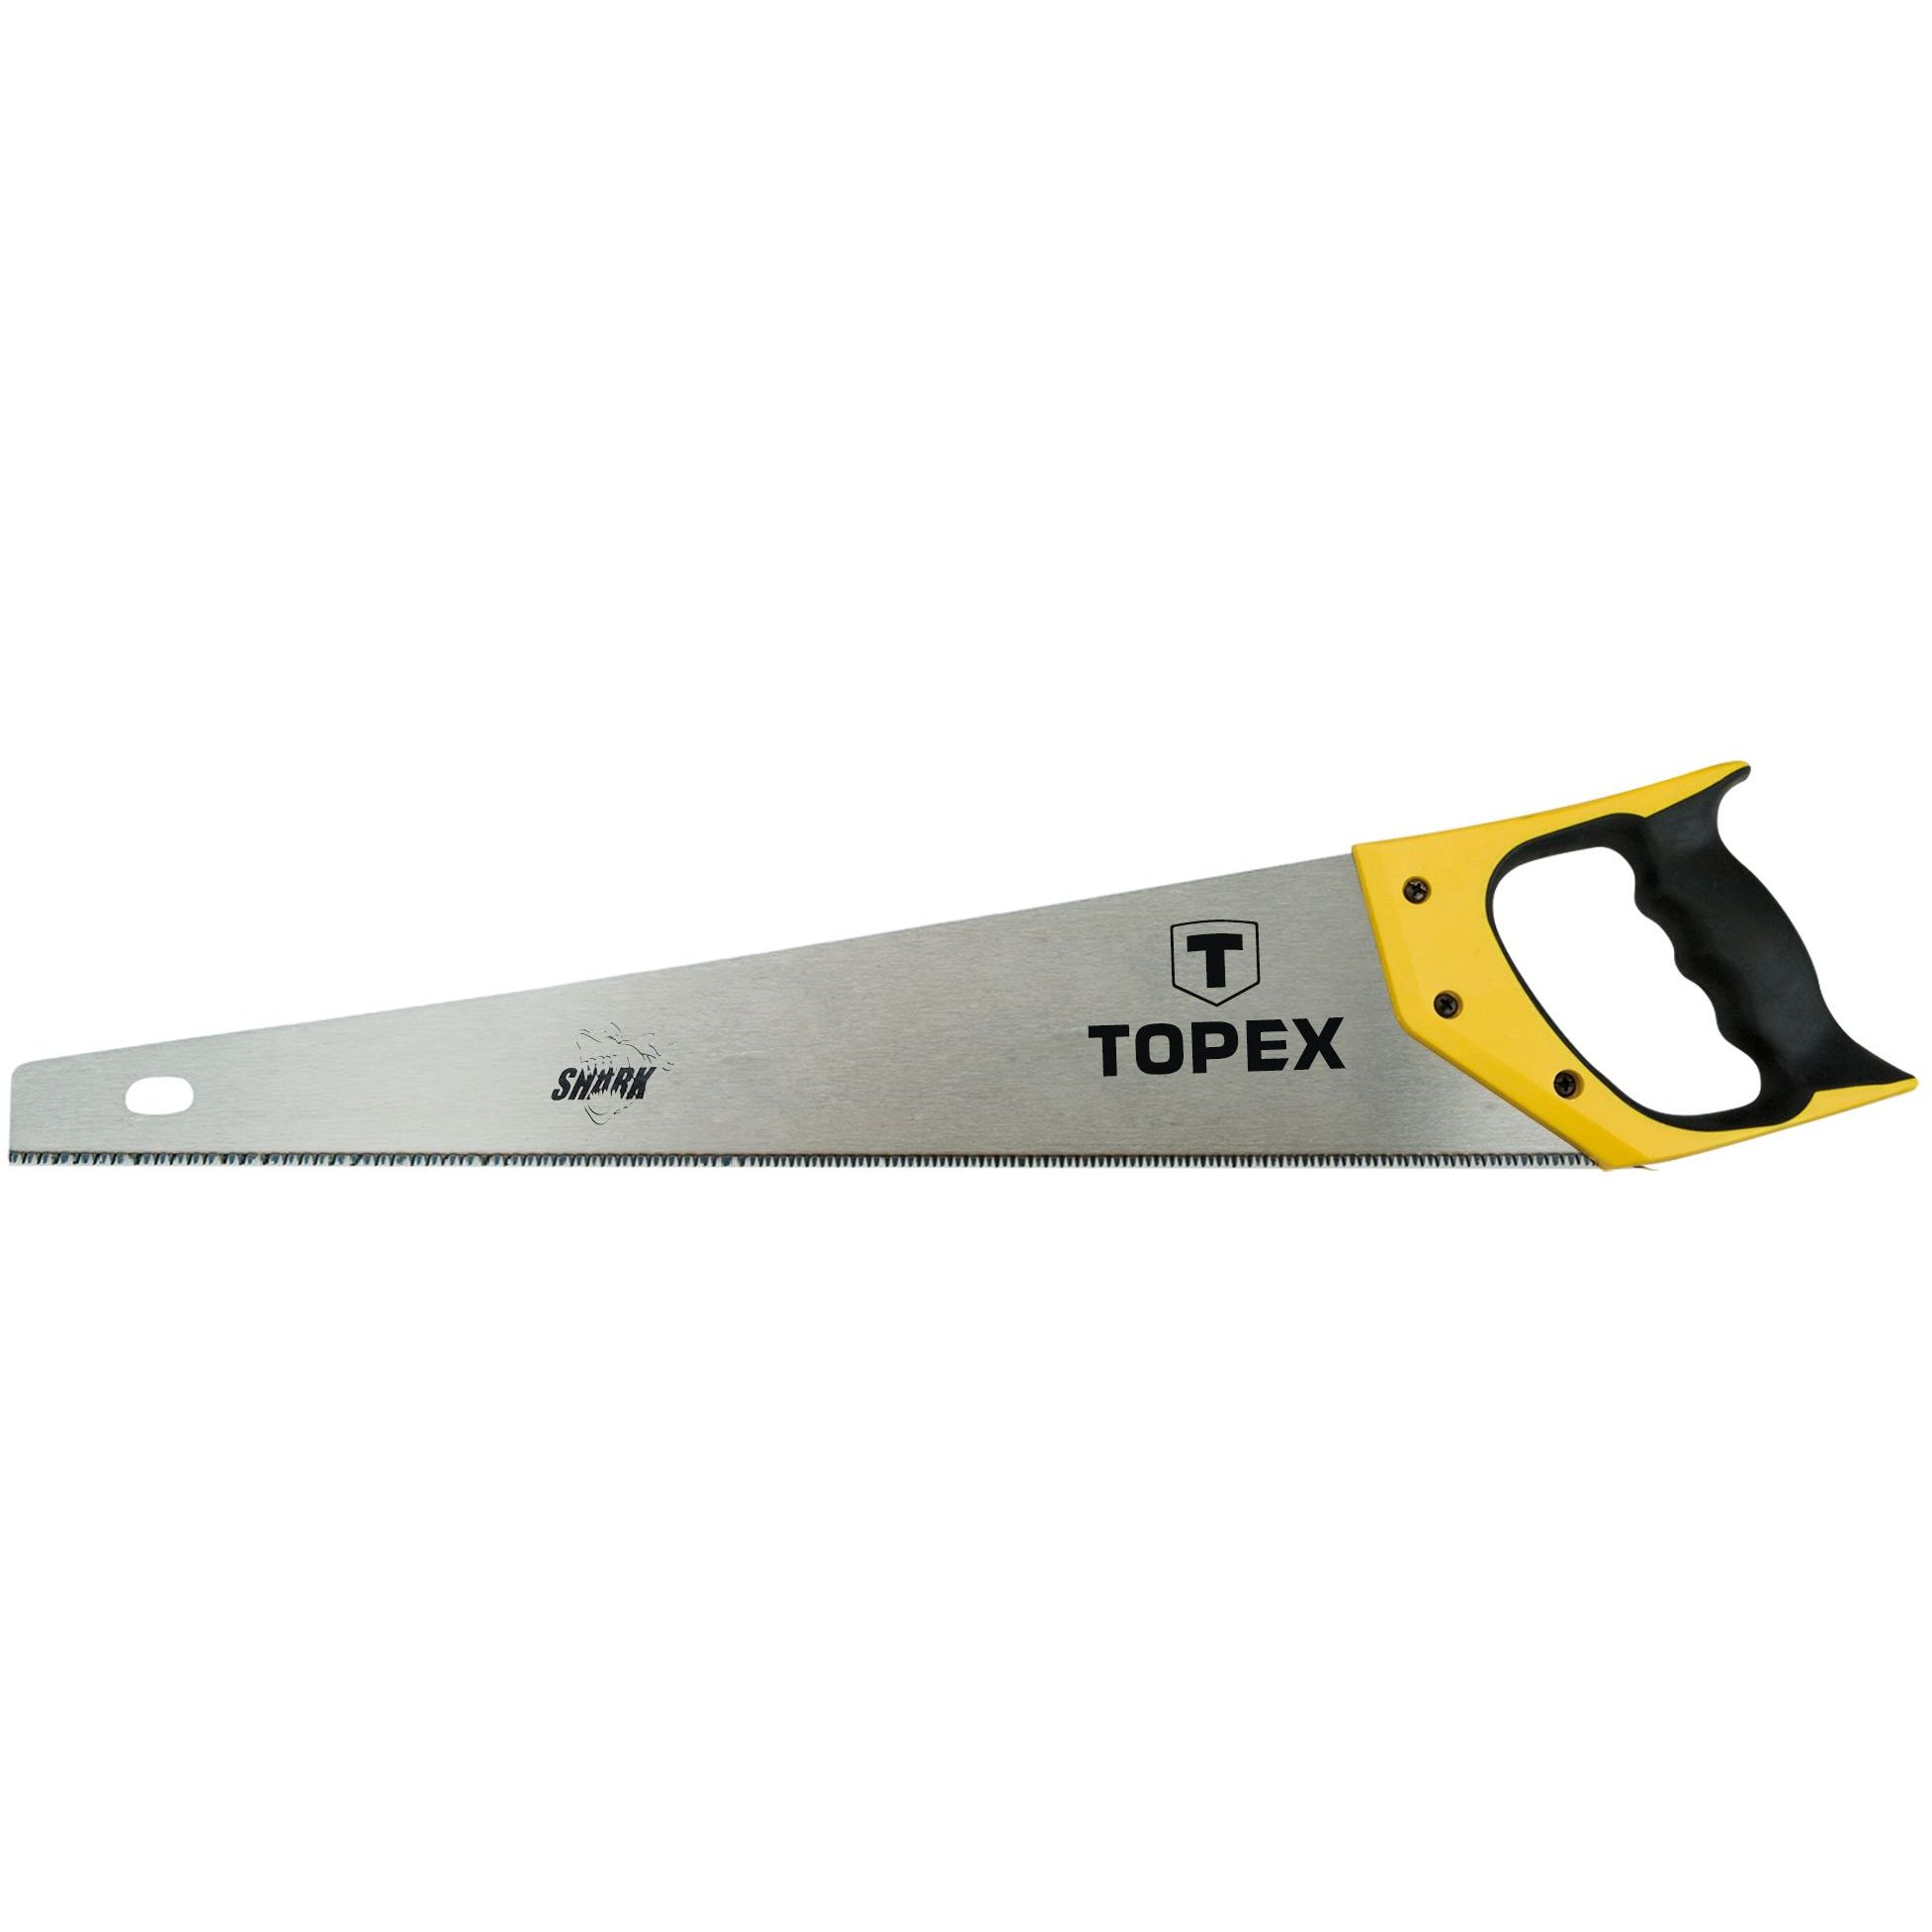 Ножівка по дереву Topex Shark 11TPI 500 мм (10A452) - фото 1